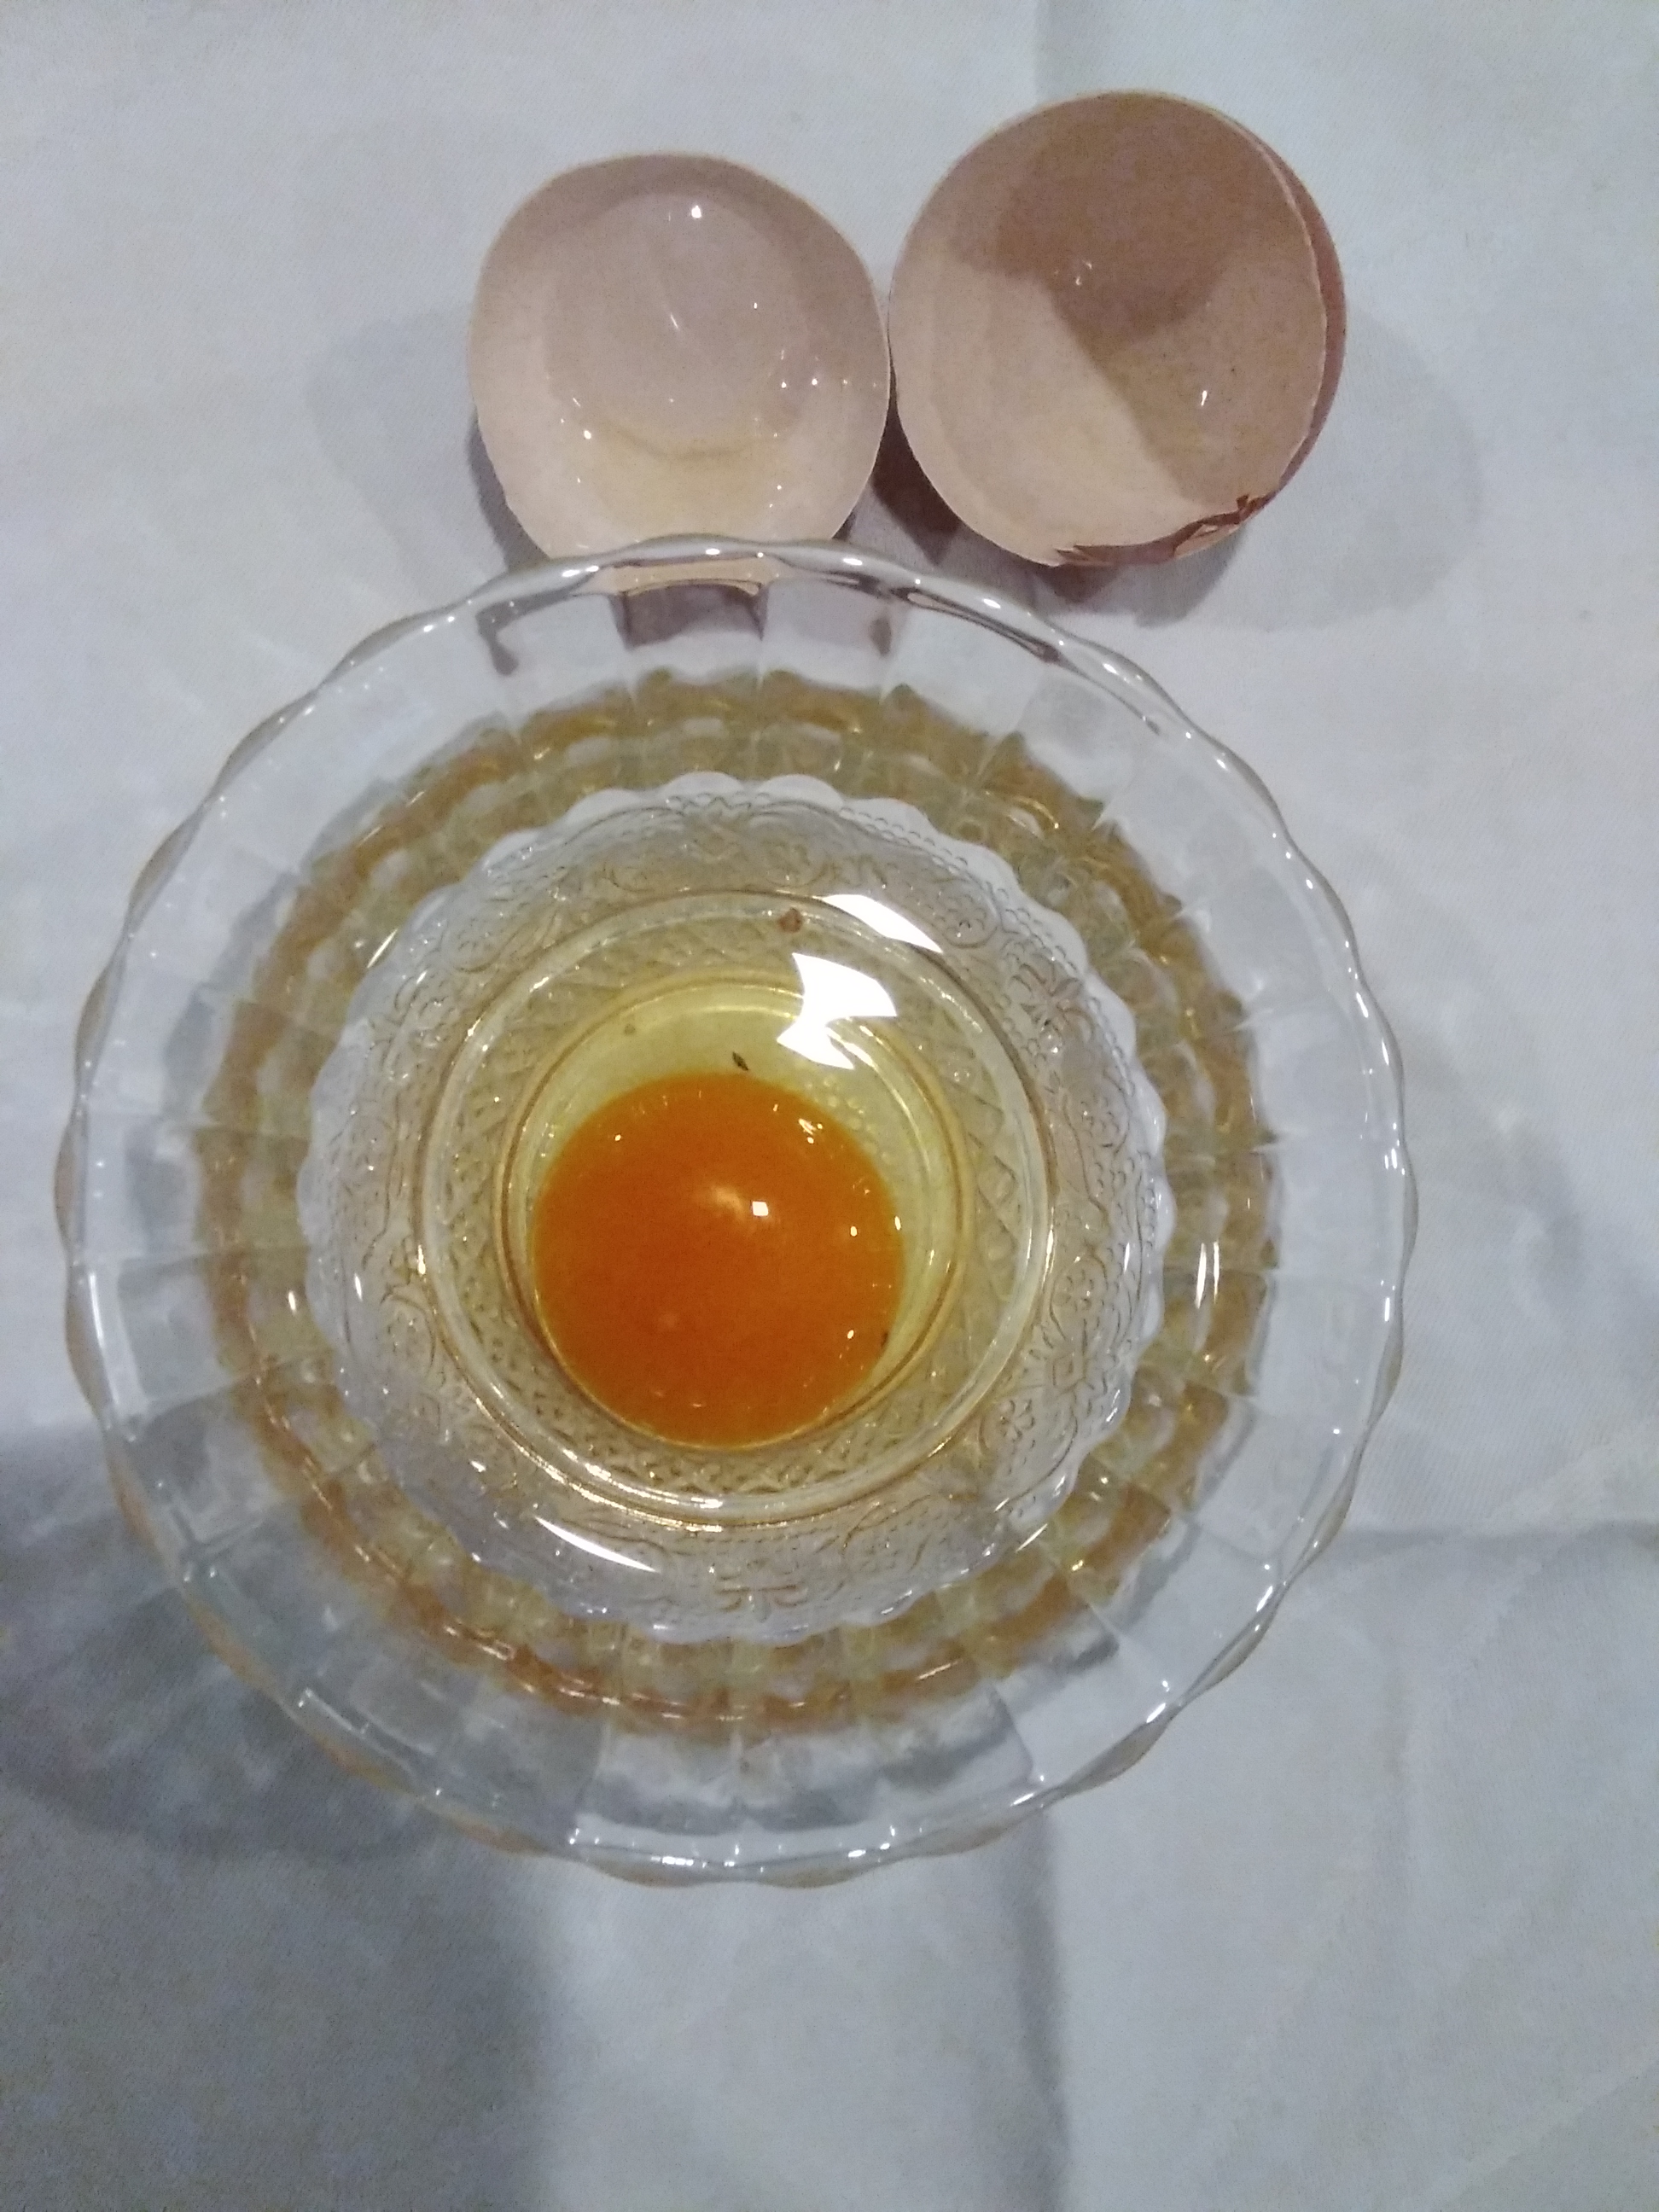 Reutilização das cascas de ovos.